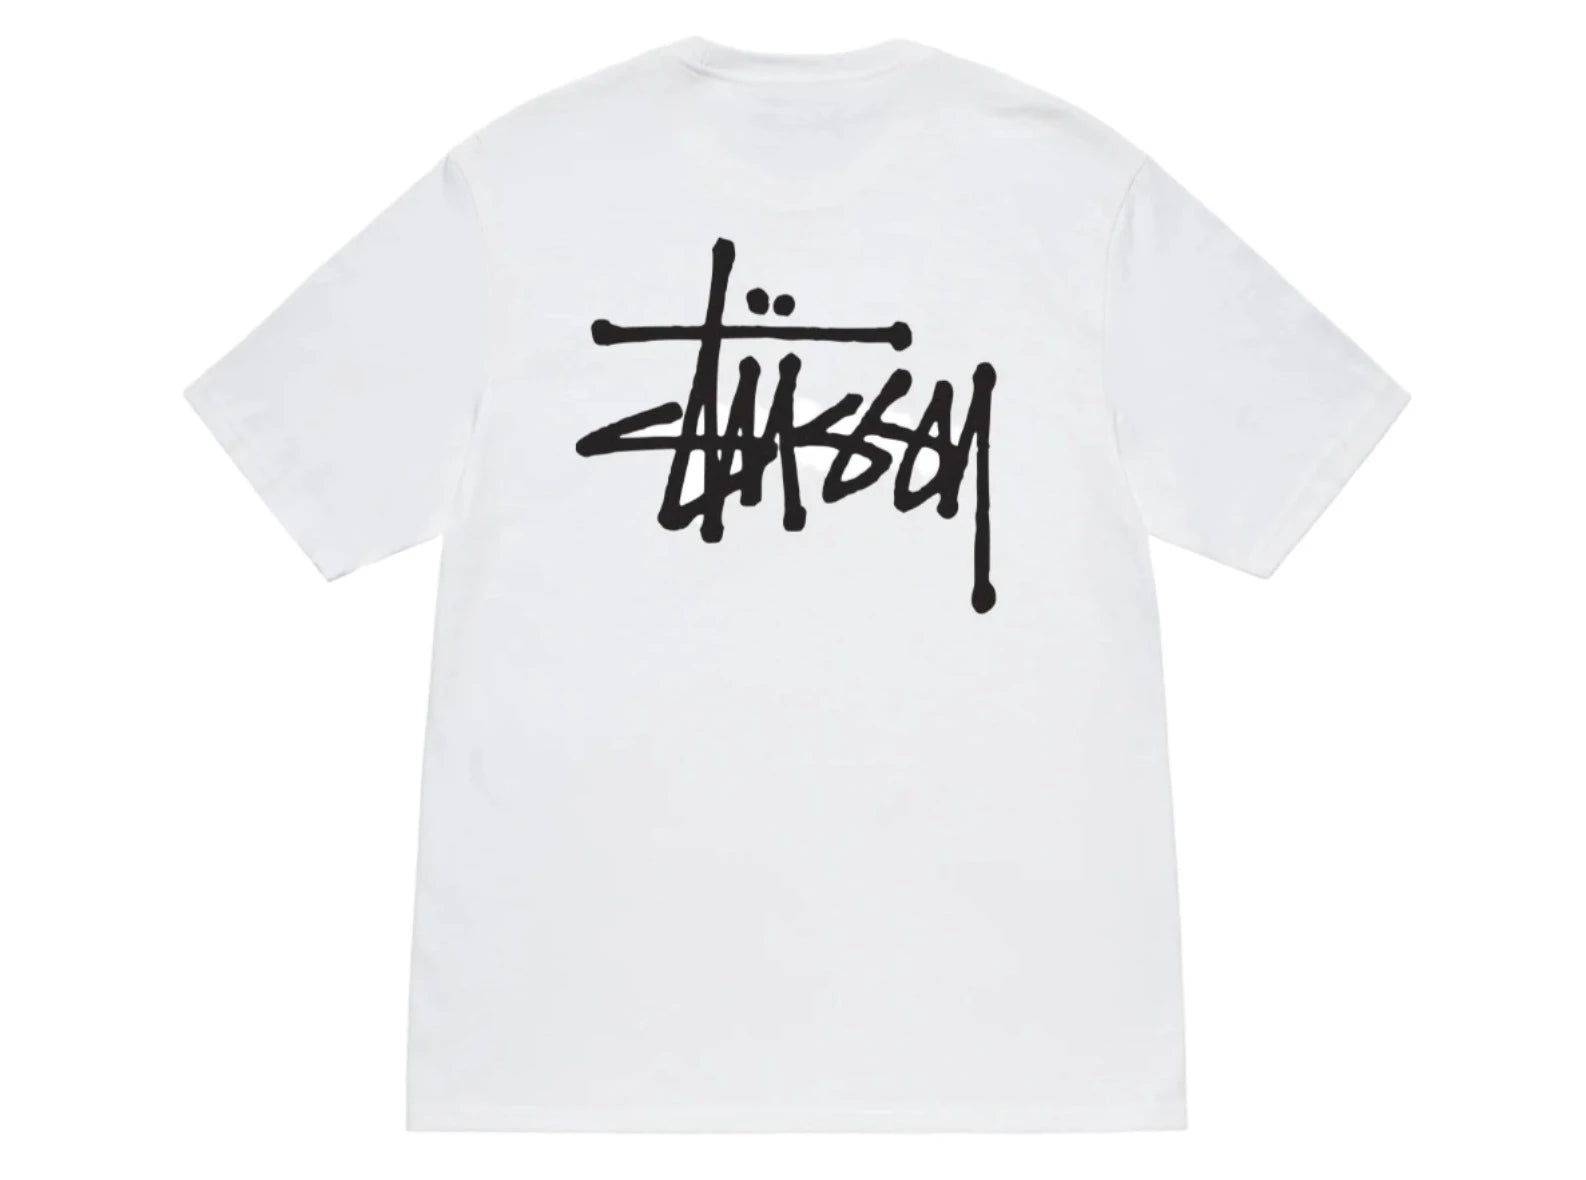 Stussy Basic T-shirt White - OnSize